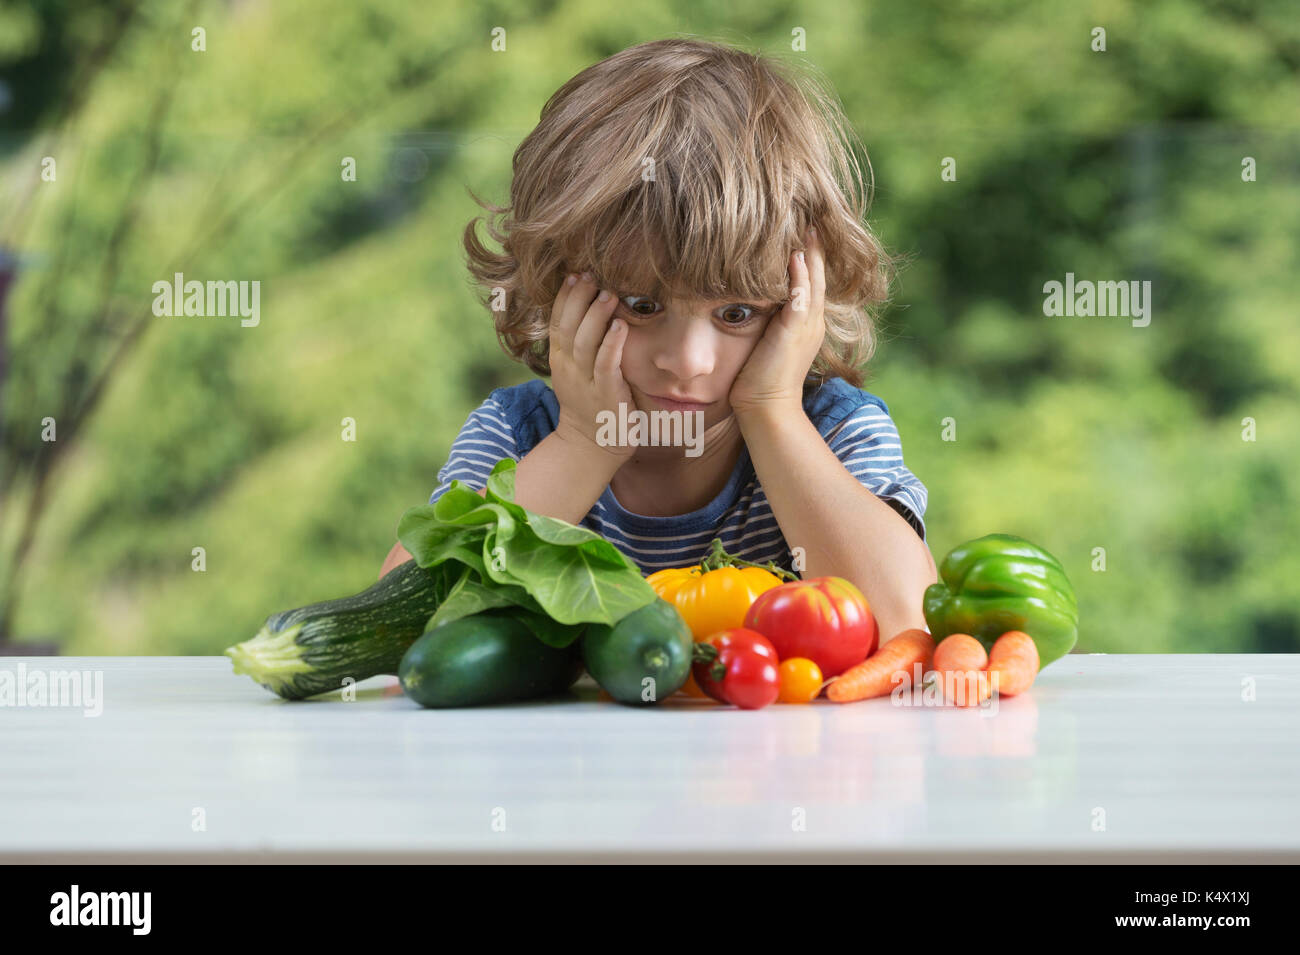 Cute little boy am Tisch sitzen, unglücklich mit seinem Gemüse essen, schlechte Essgewohnheiten, Ernährung und gesunde Ernährung Konzept Stockfoto